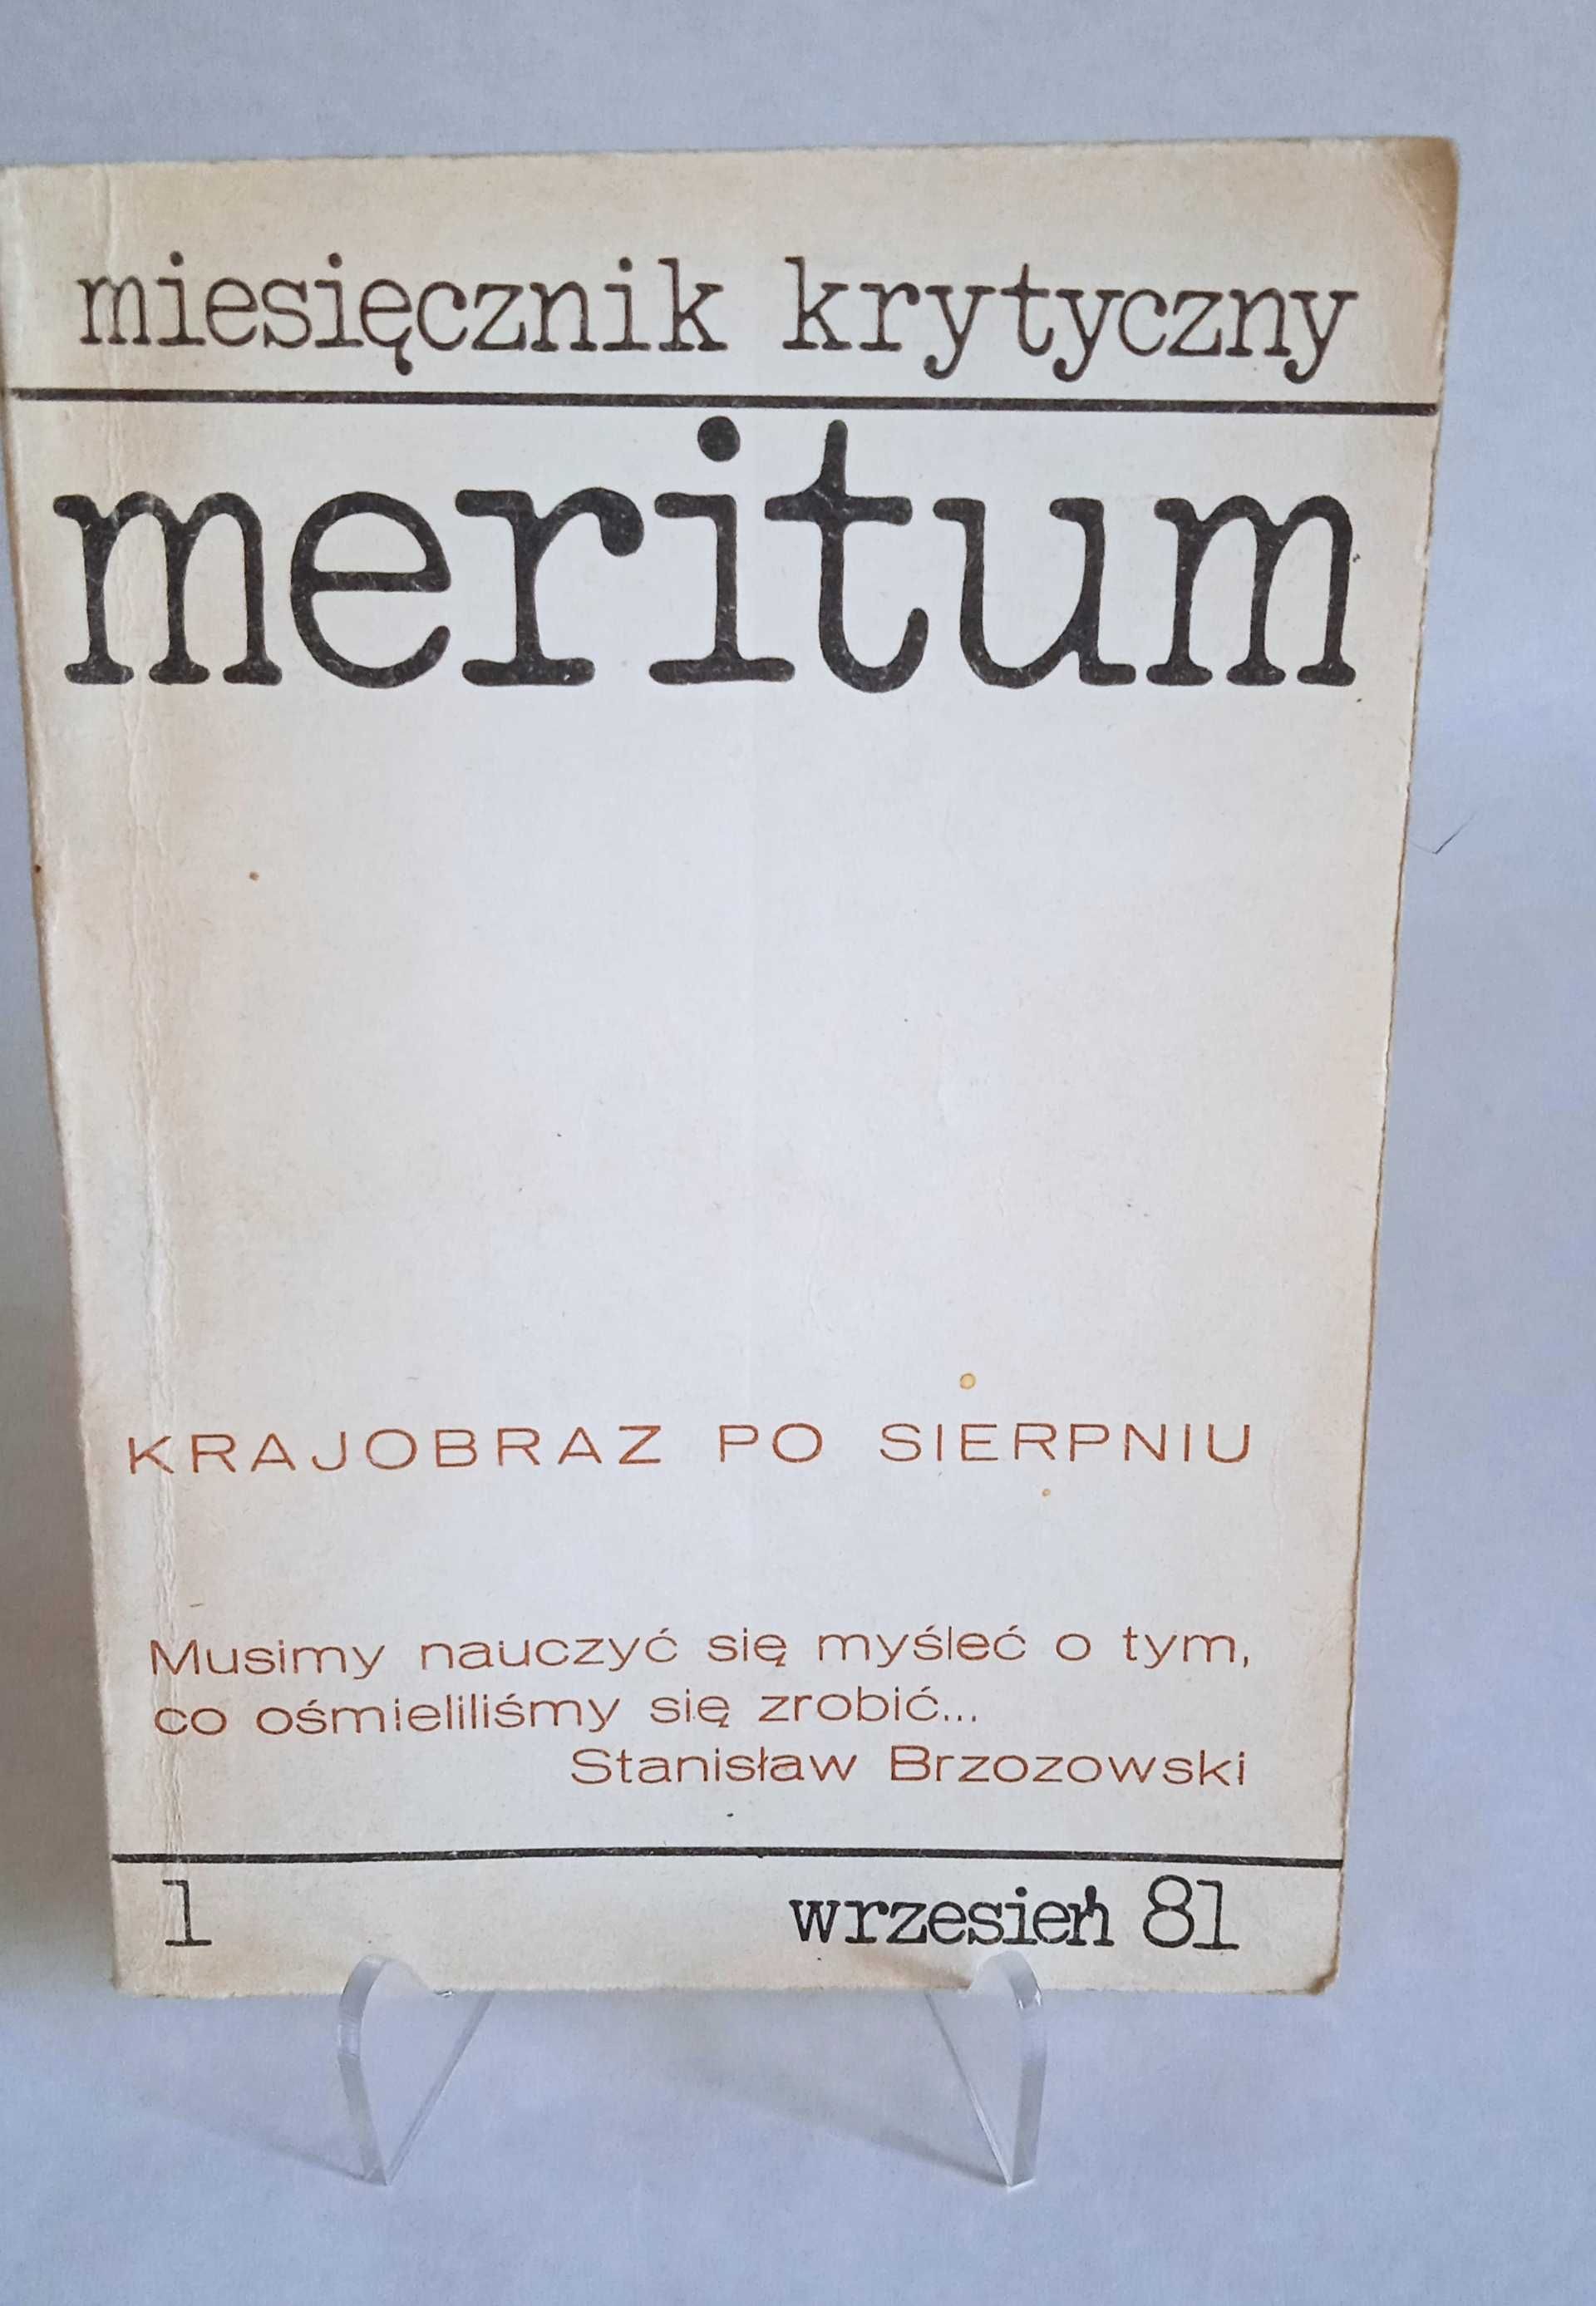 Meritum nr 1 - miesięcznik krytyczny wrzesień '81